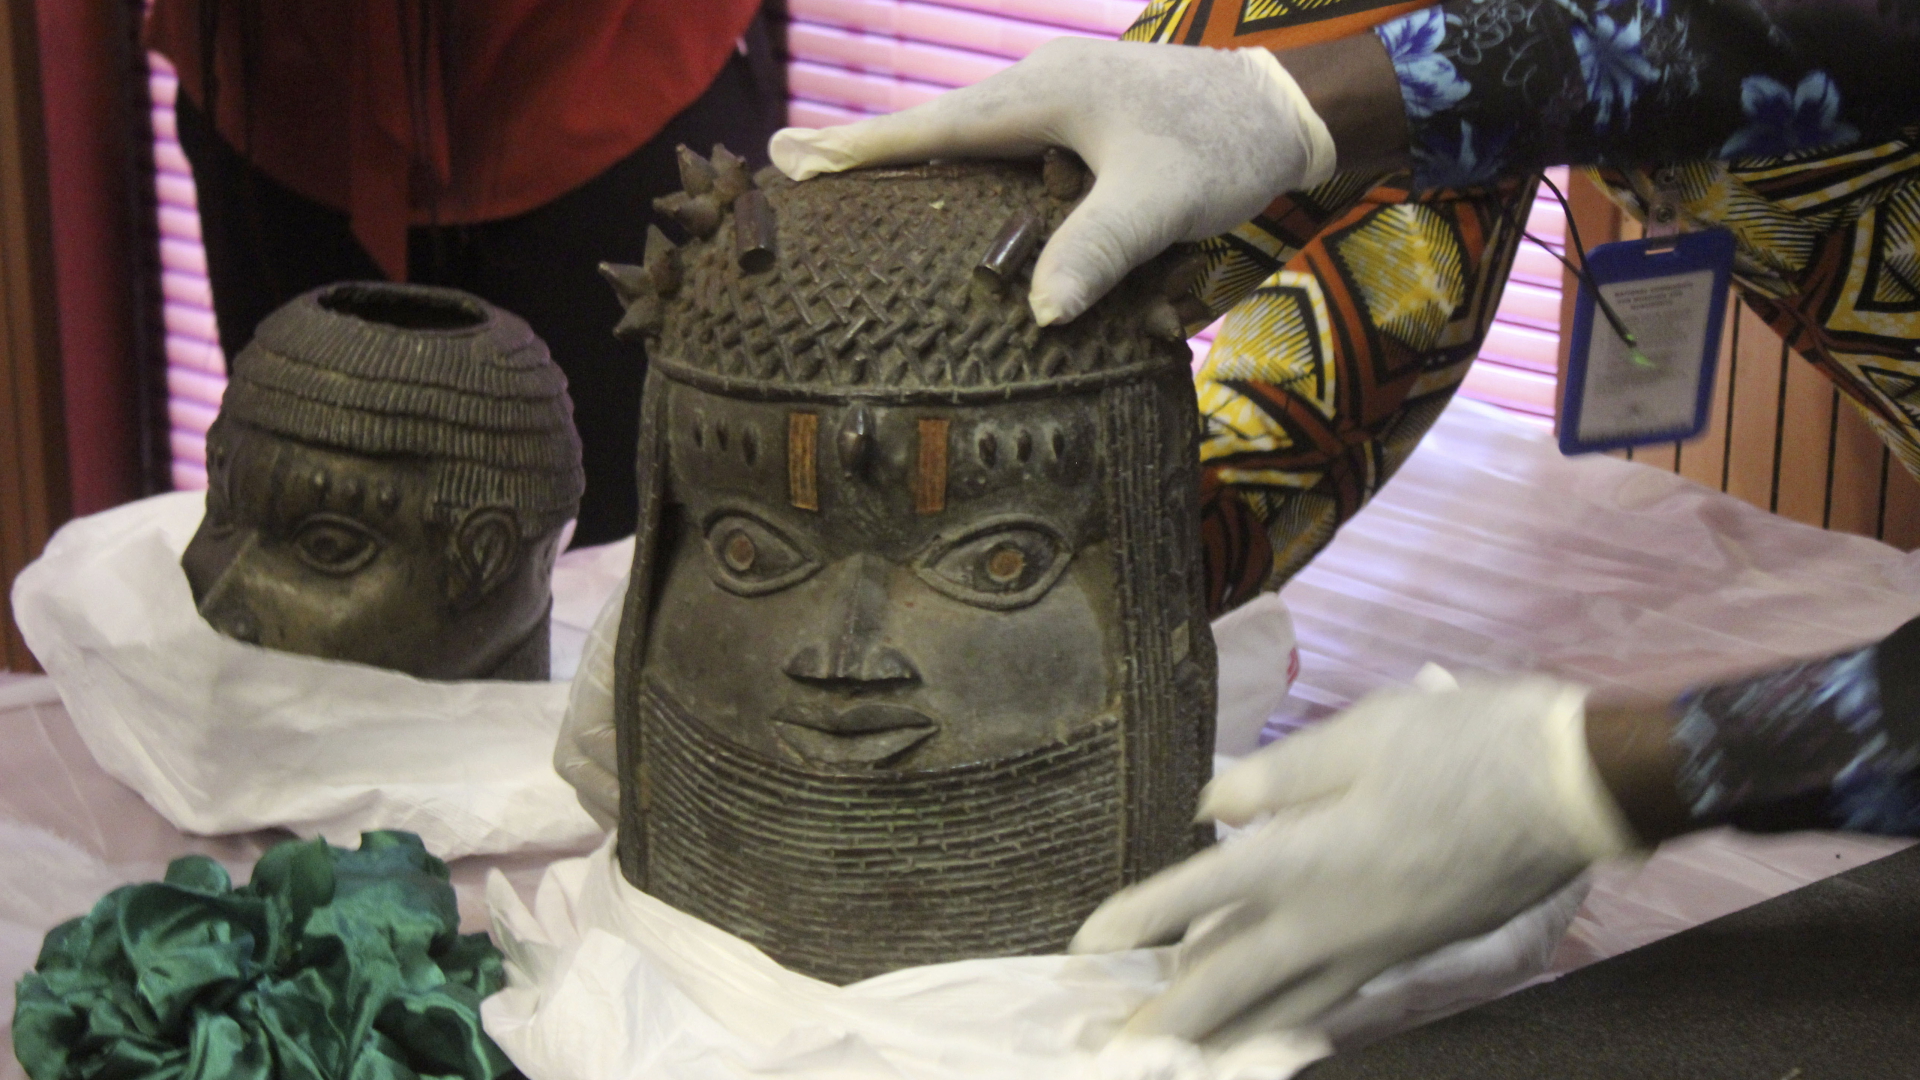 Benin-Bronzen, die in der Vergangenheit geraubt und an Nigeria zurückgegeben wurden, werden während einer Übergabezeremonie ausgestellt. | dpa